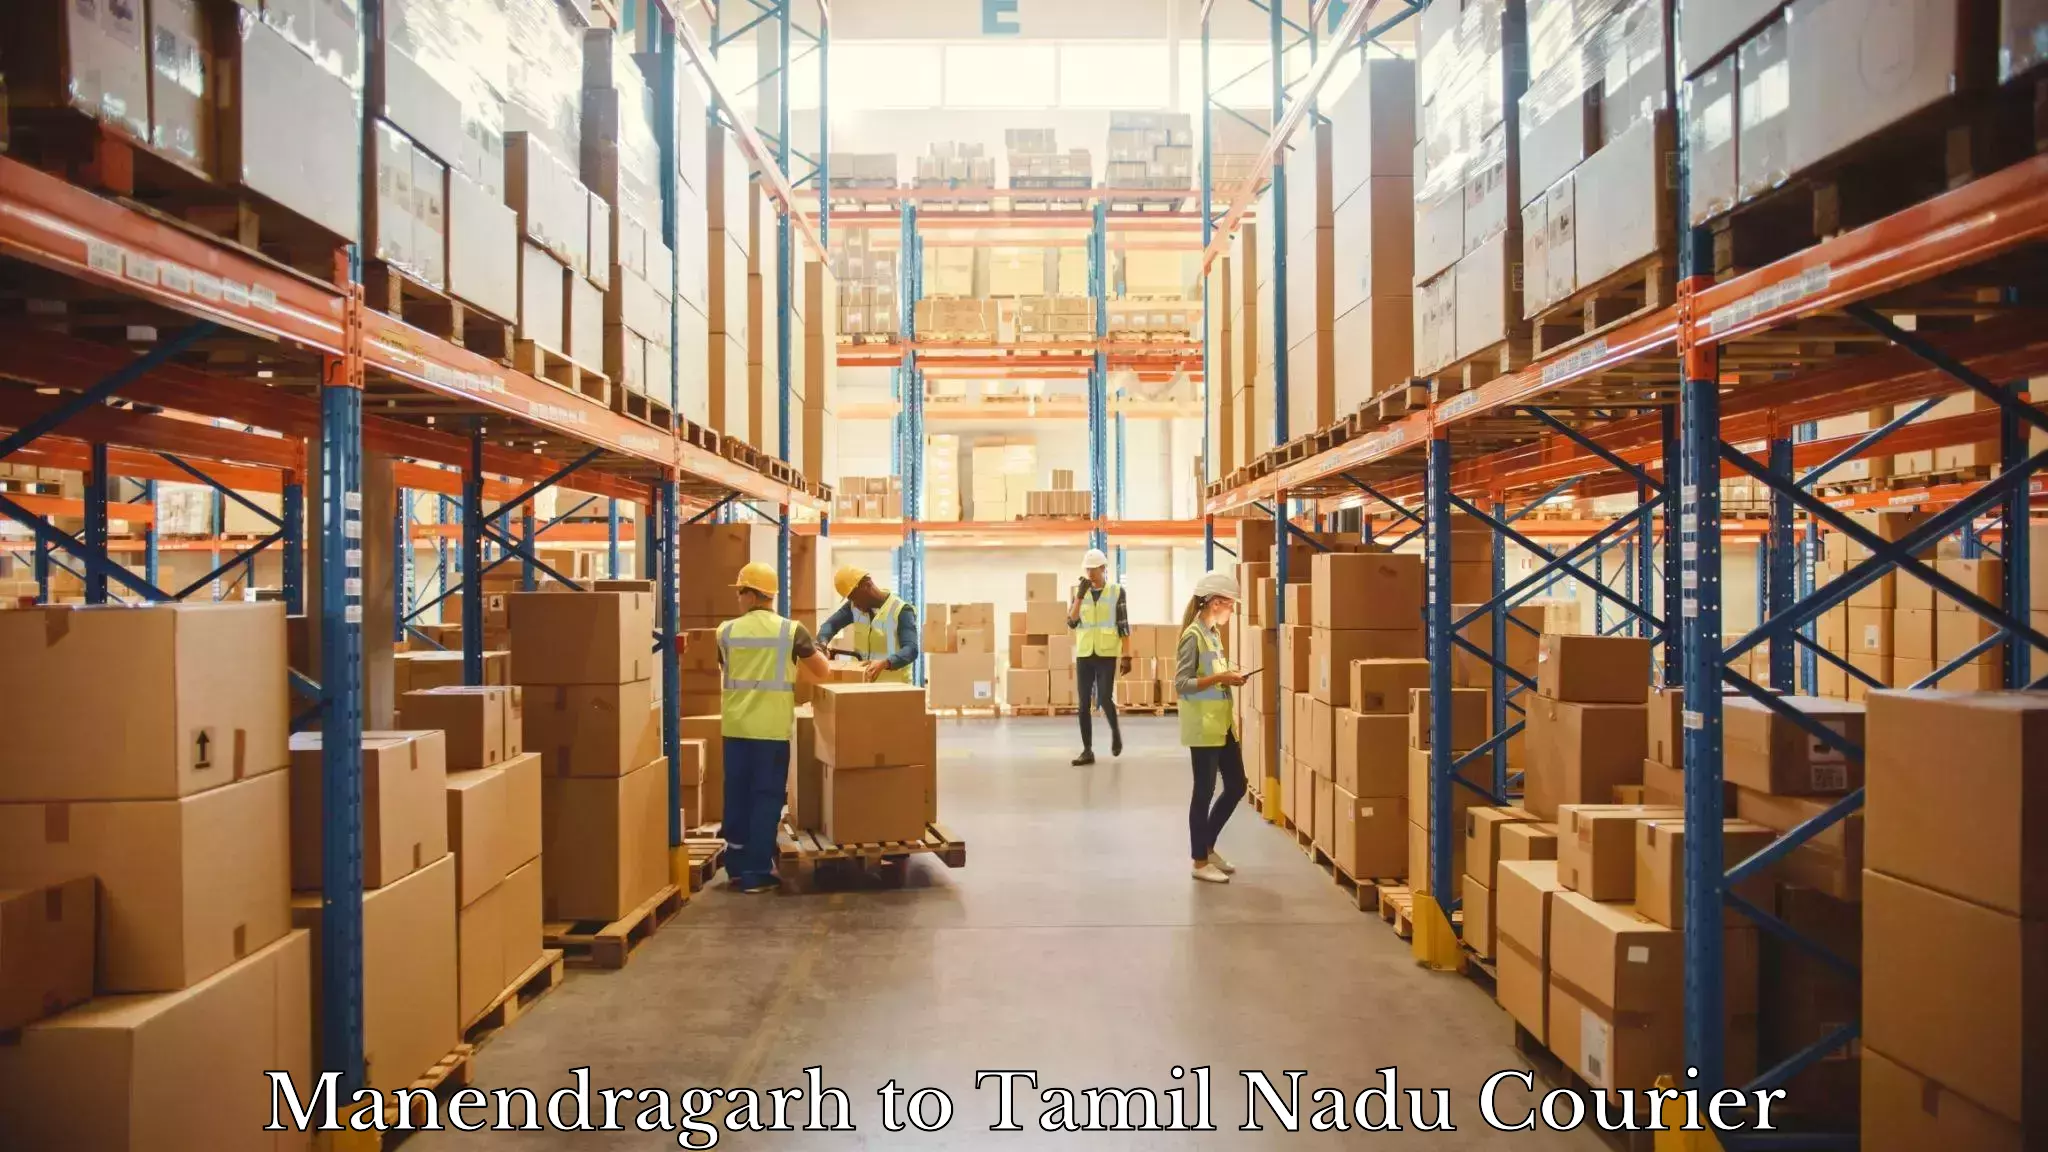 Courier service efficiency Manendragarh to Ambattur